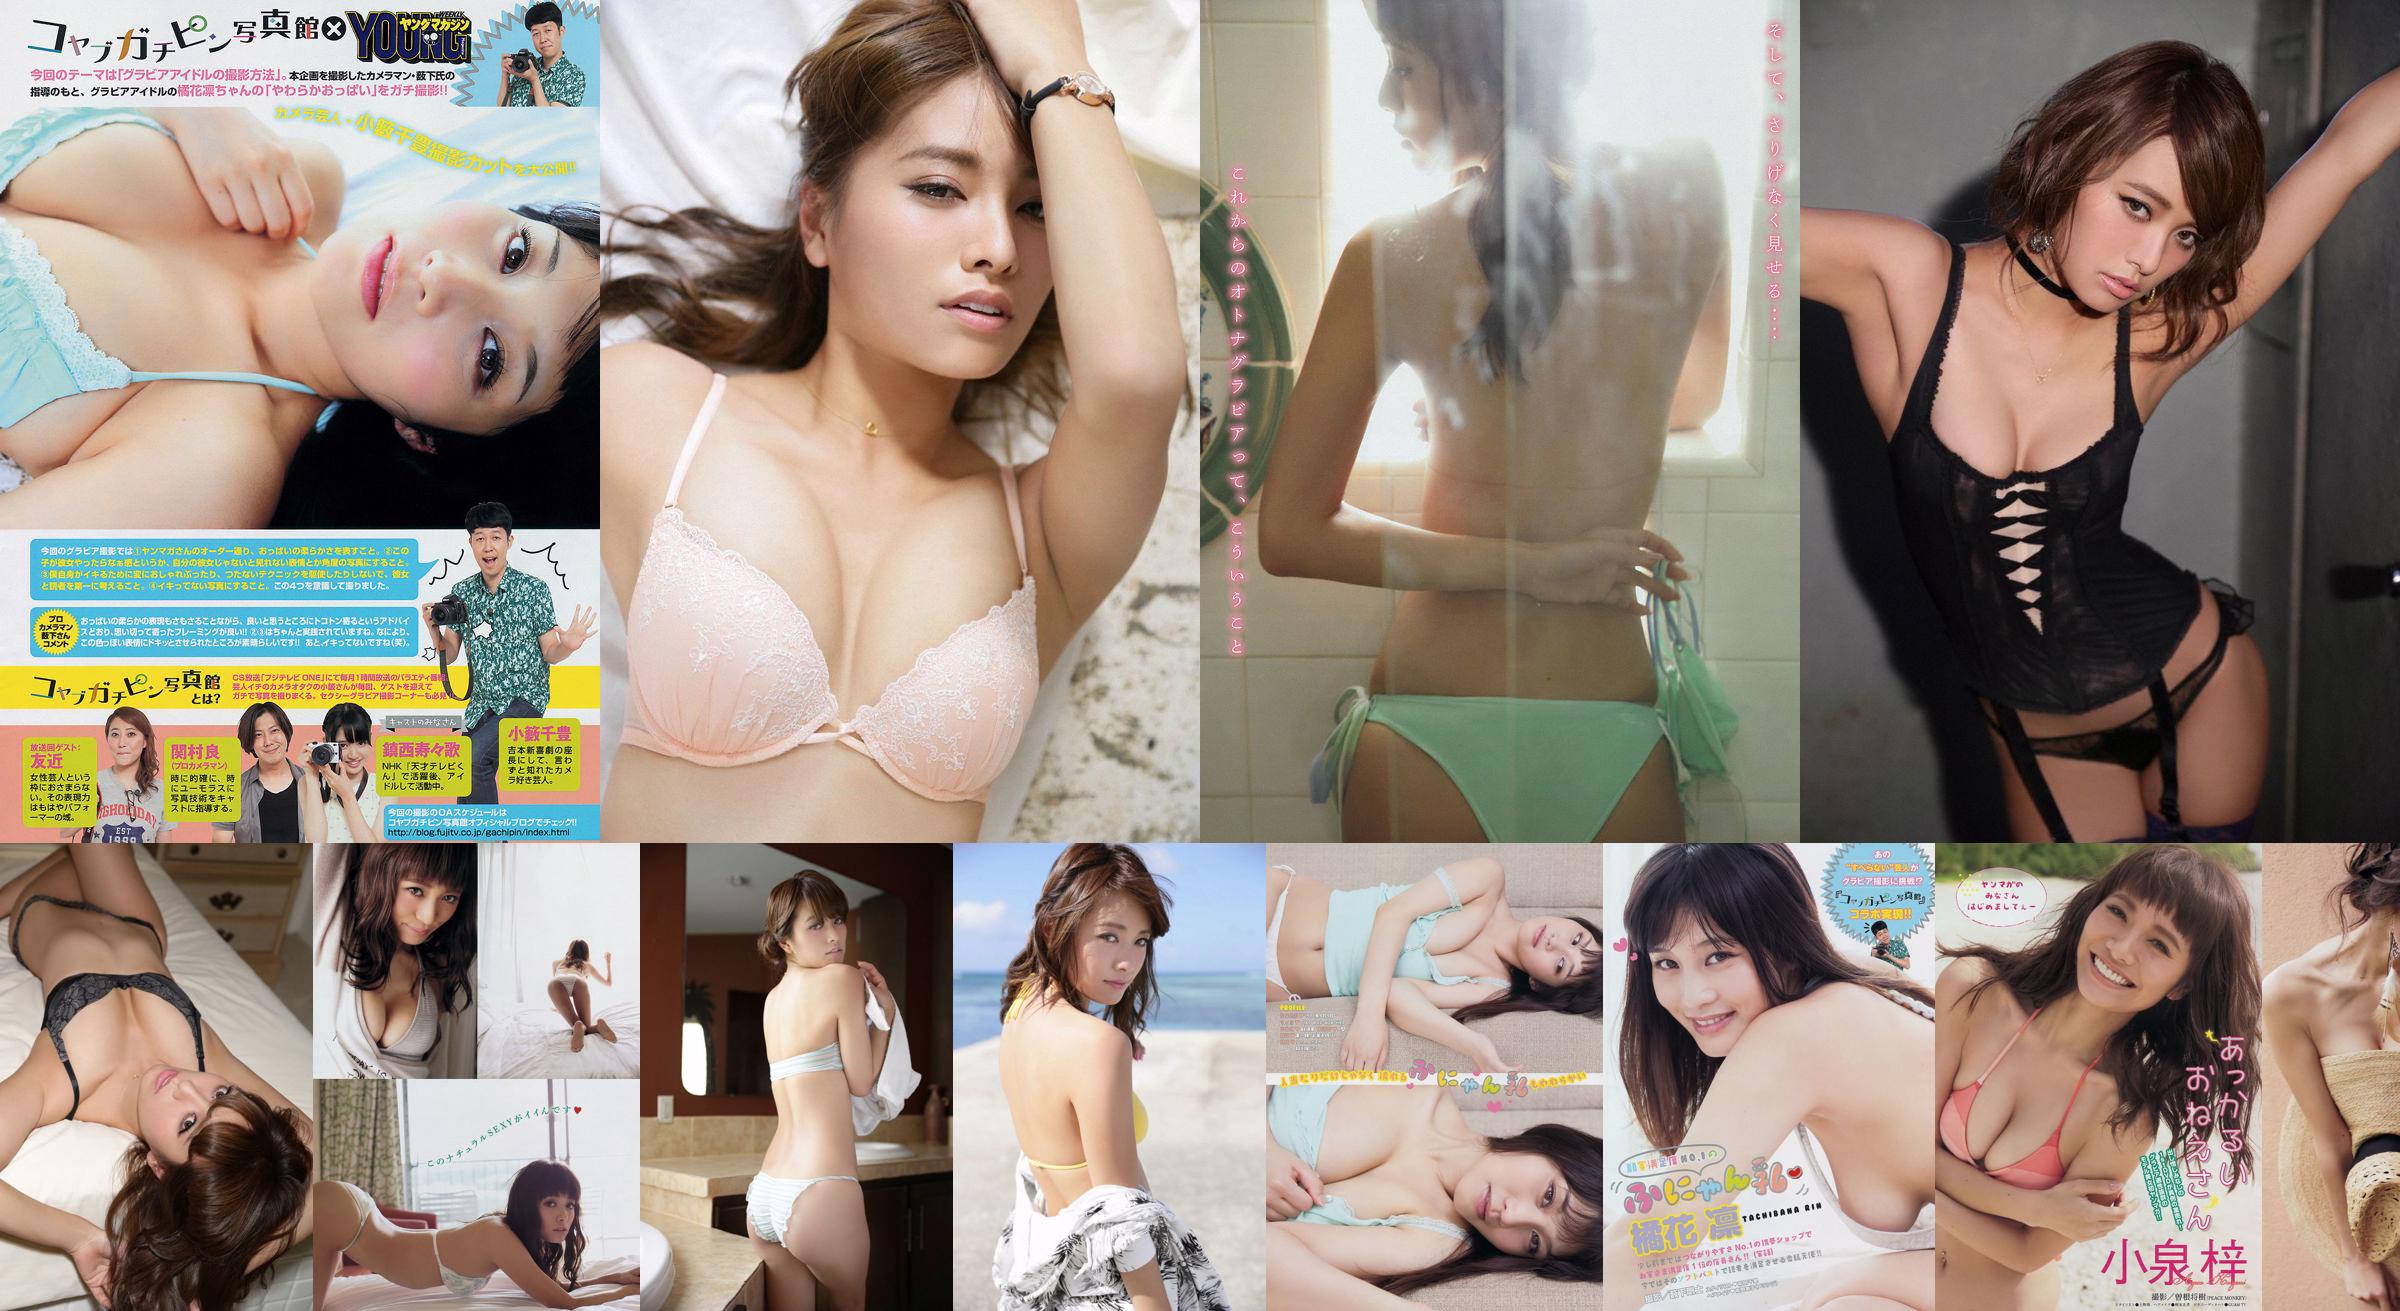 [Young Magazine] Azusa Koizumi Tachibana Rin 2014 No.43 Photo Magazine No.8954b5 Pagina 1